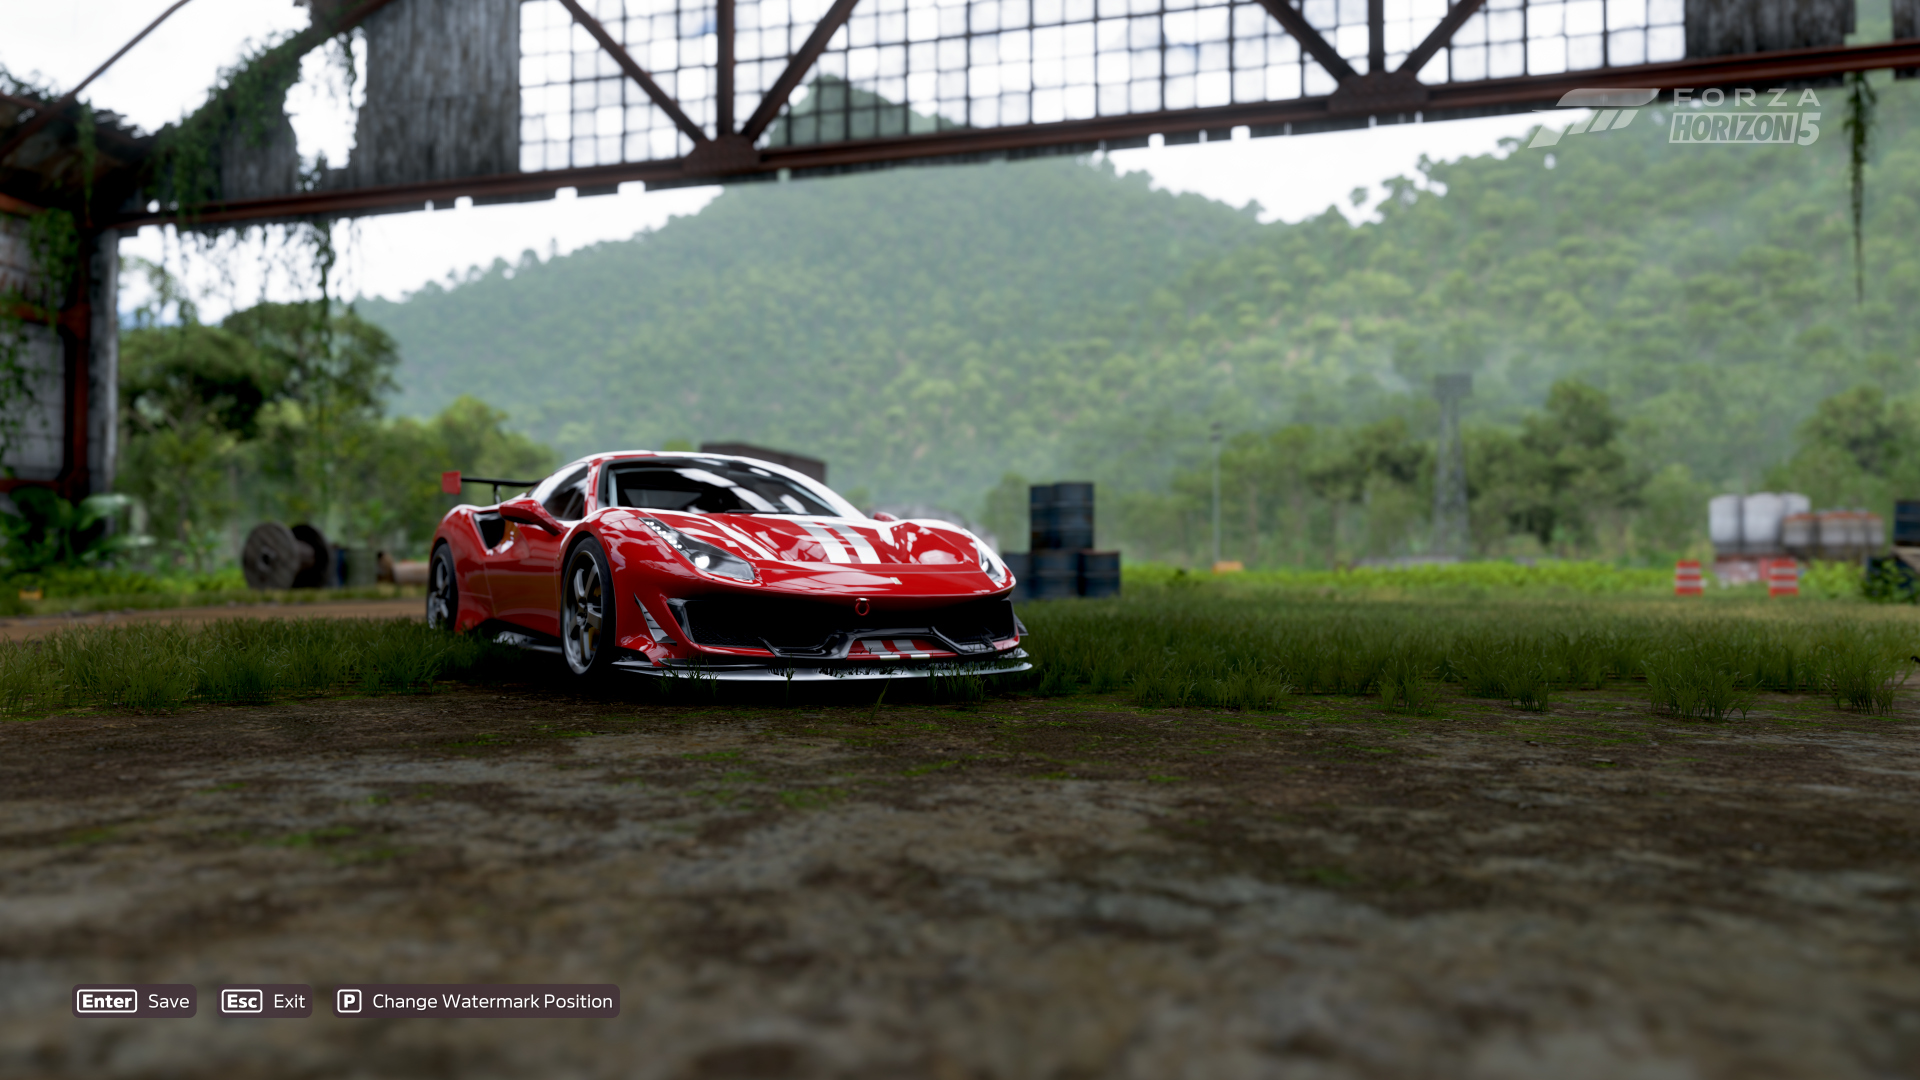 Forza Horizon 5 Mexico Landscape Video Games Ferrari Ferrari 488 Pista Italian Cars Screen Shot 1920x1080